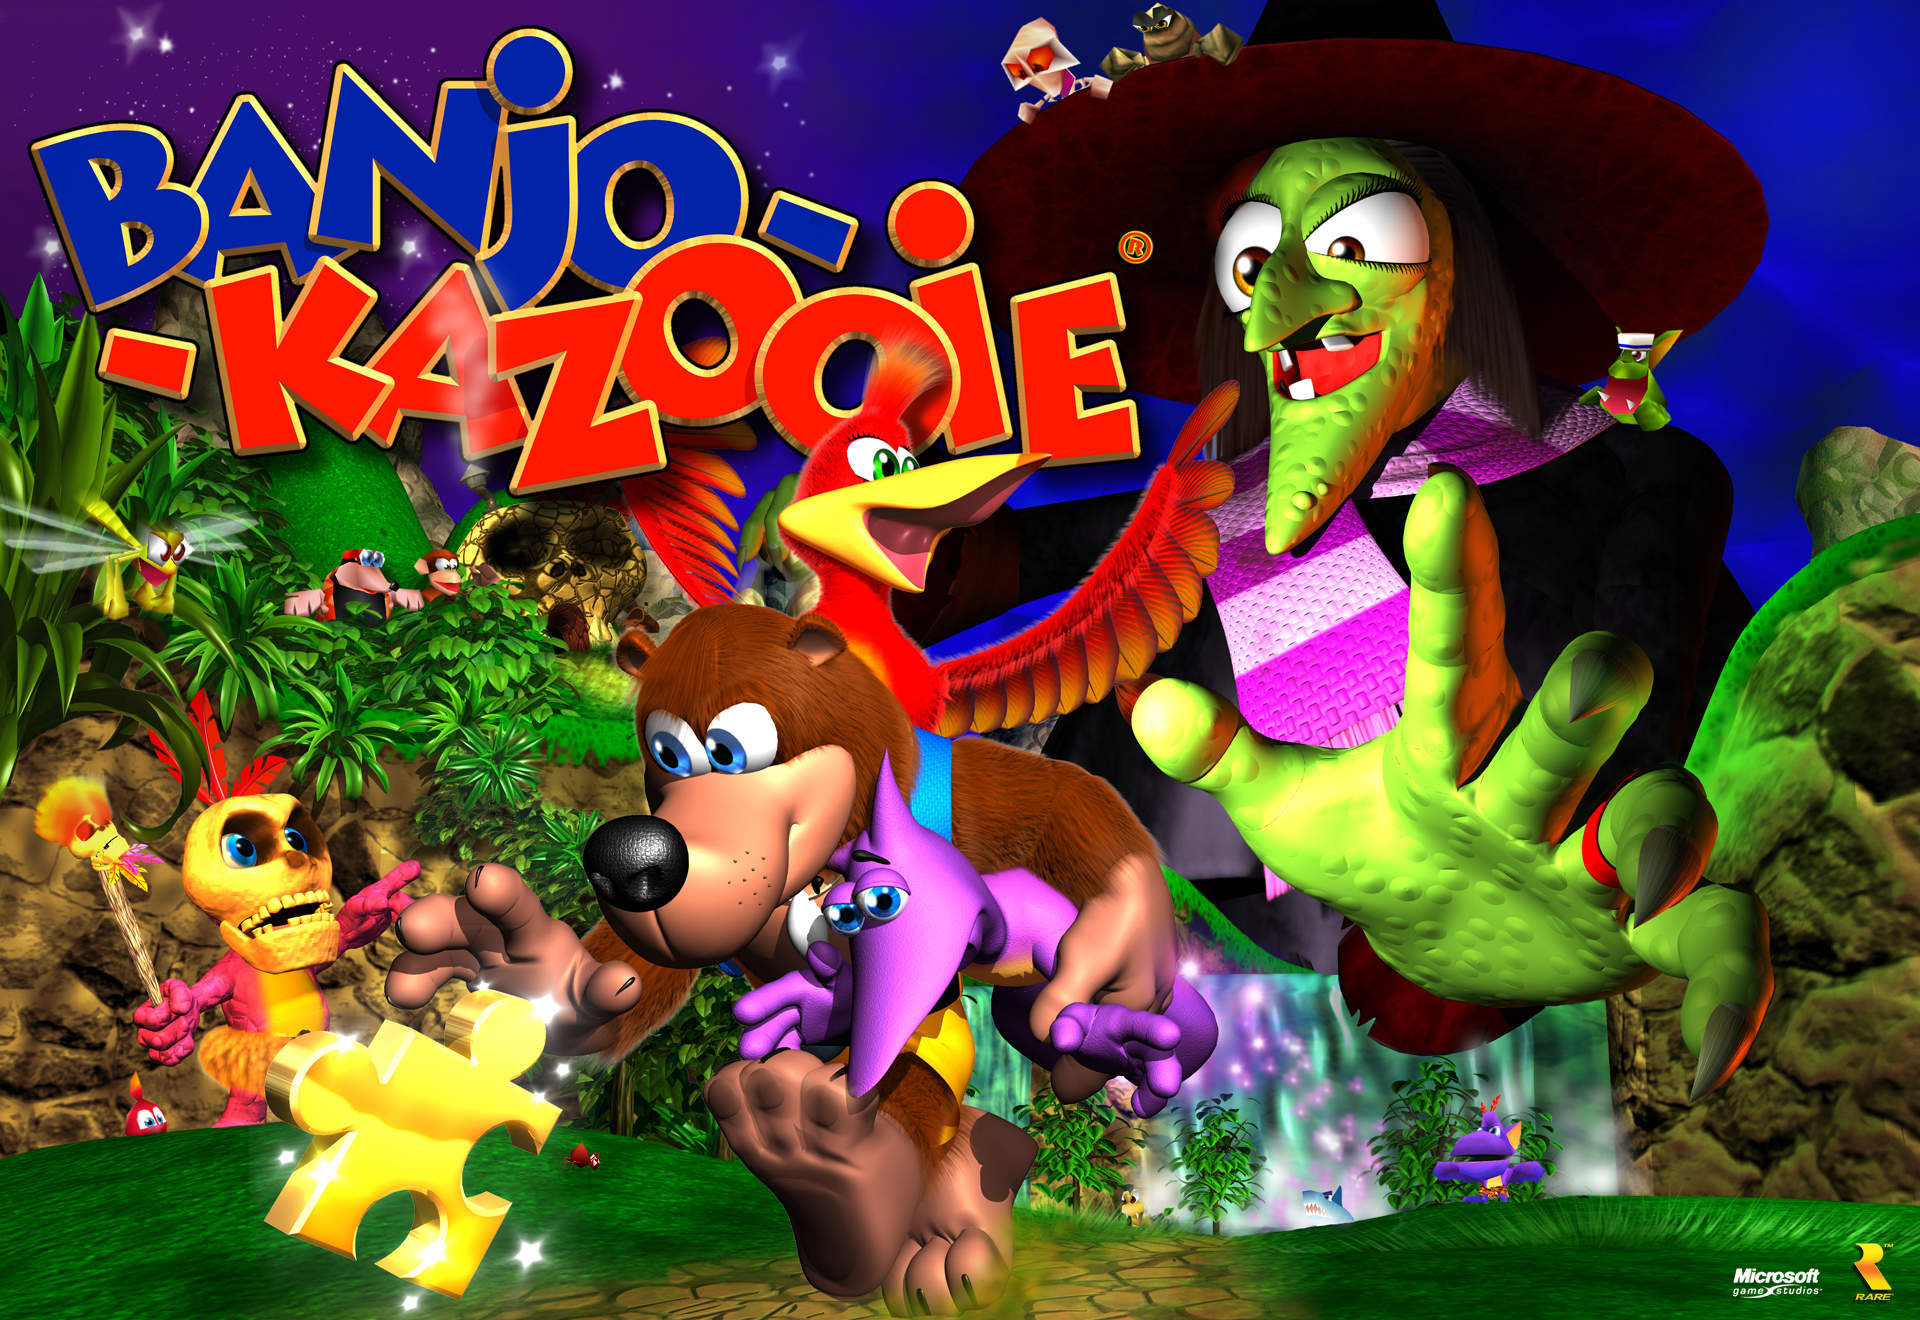 Banjo-Kazooie Review (N64)